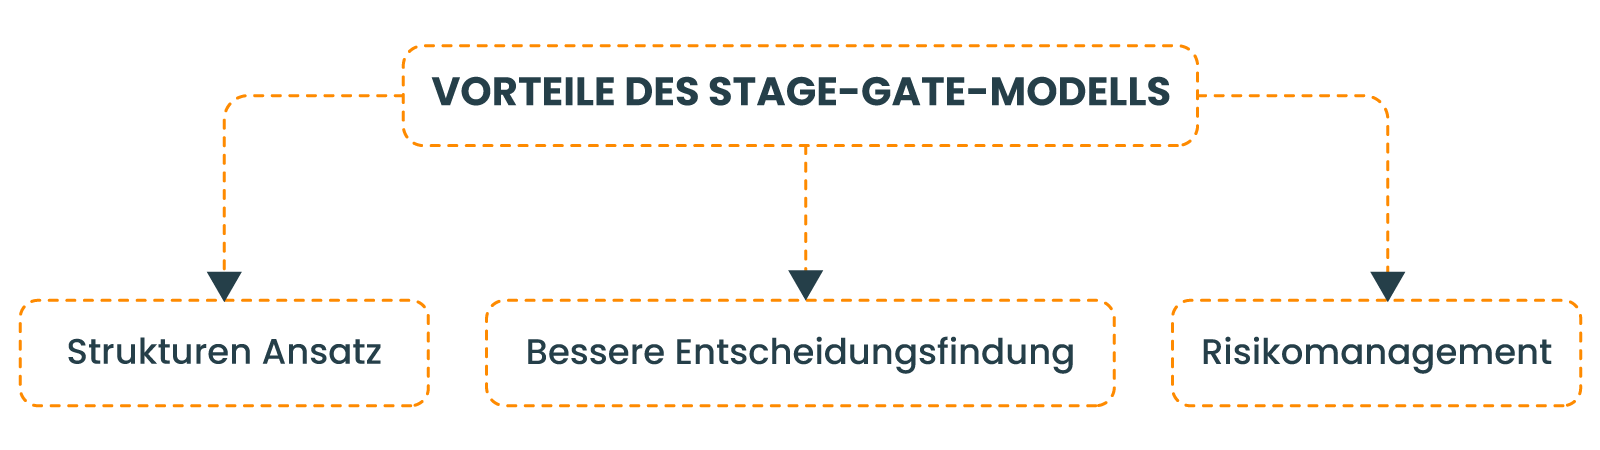 Vorteile des Stage-Gate-Modells